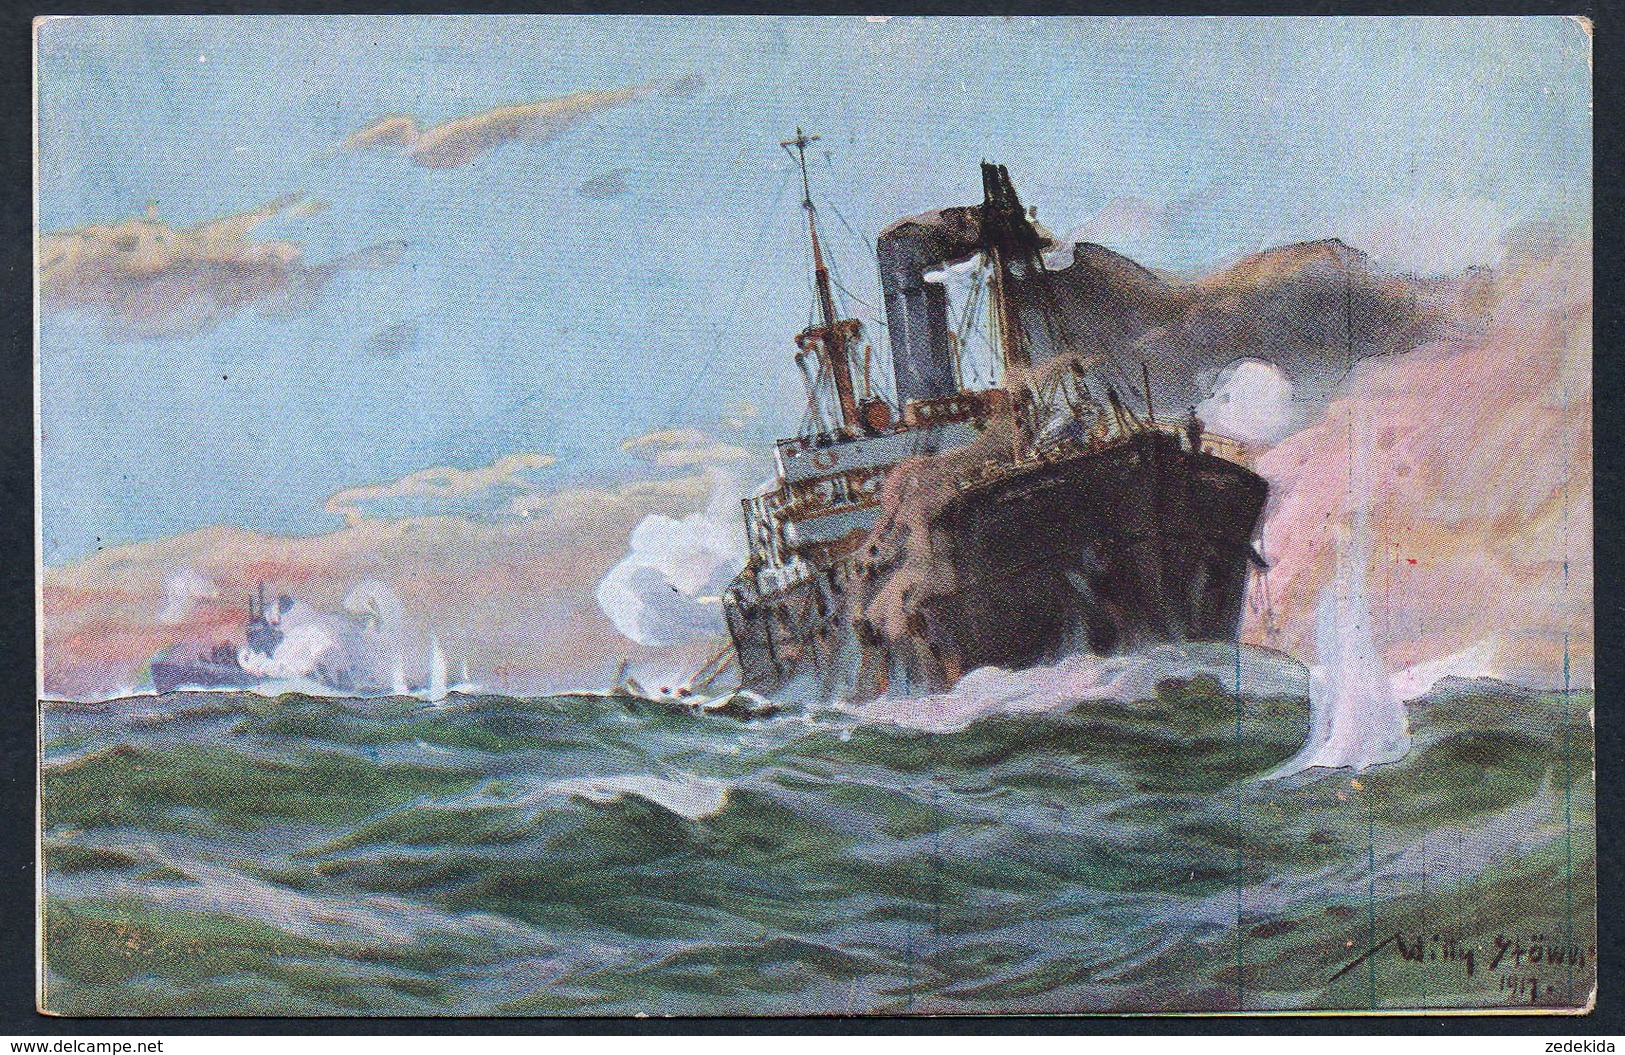 6470 - Alte Künstlerkarte - Gemälde Willy Stöwer - U Boot Spende 1917 - 1. WK WW - Dampfer - J.J. Weber - Stoewer, Willy